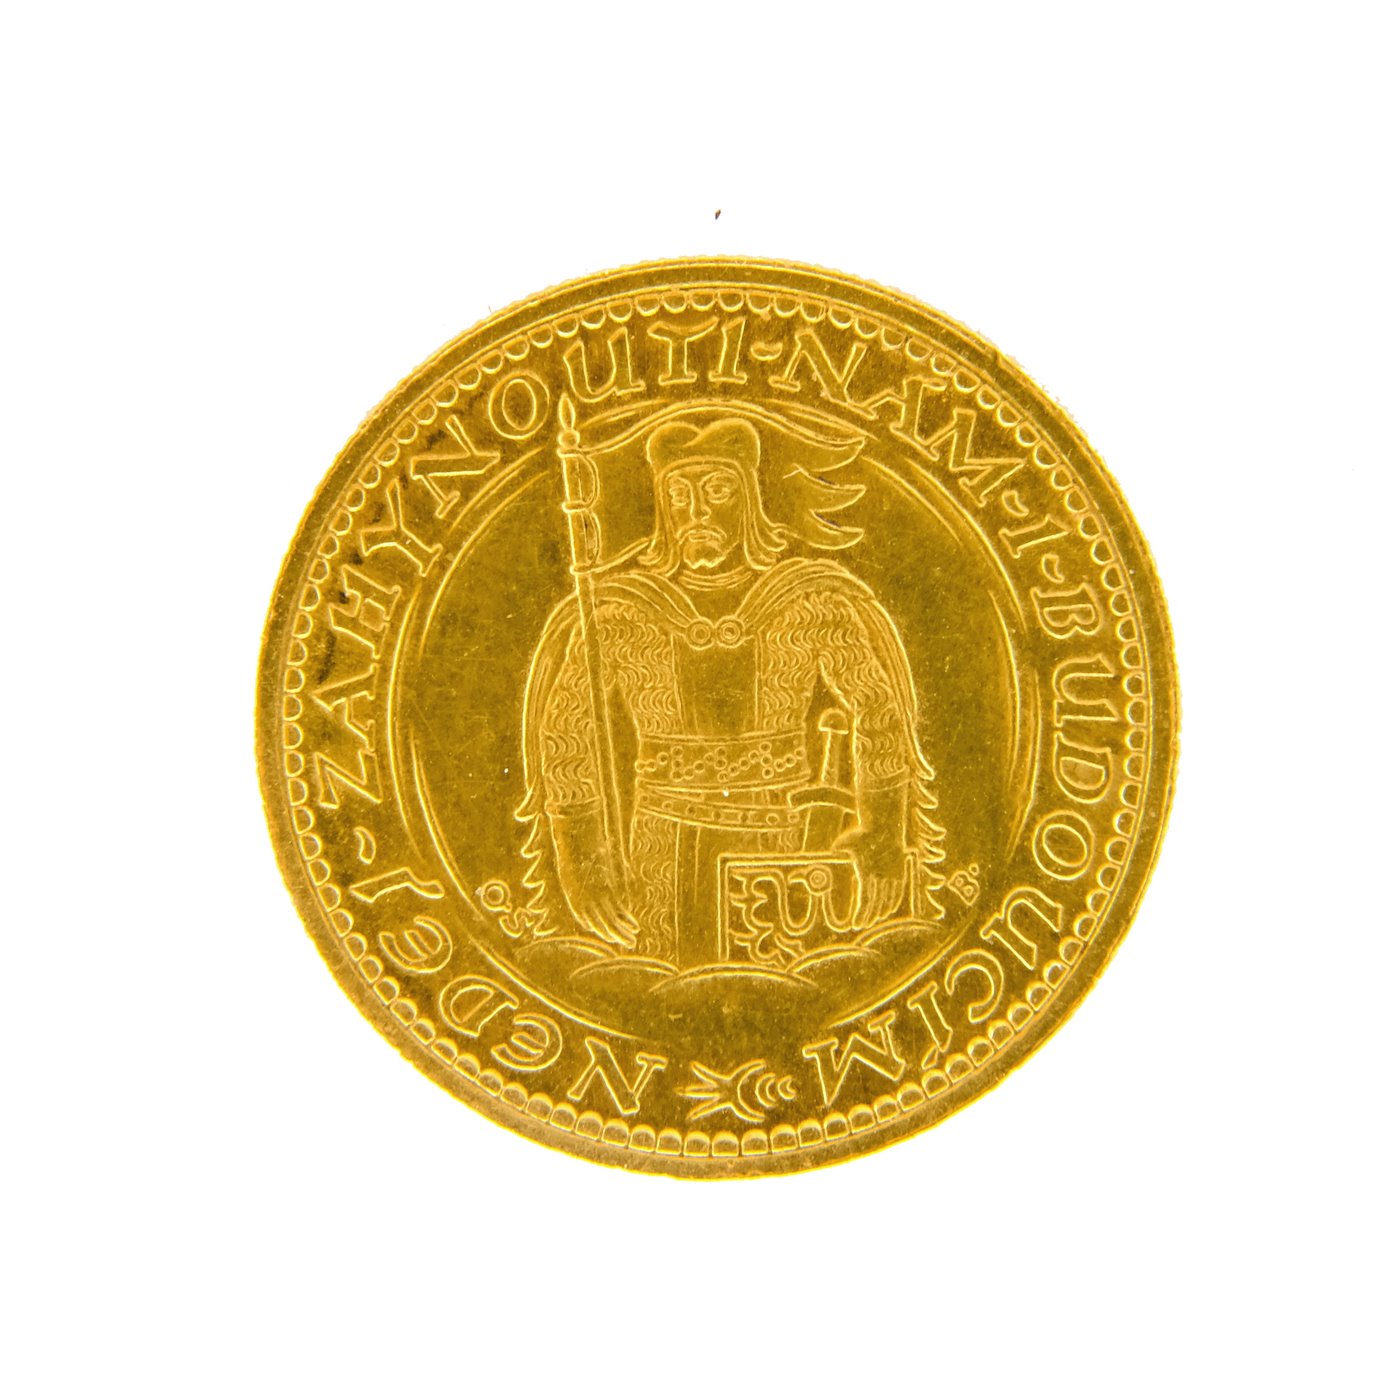 .. - Československá republika Svatováclavský dukát 1933, zlato 986/1000, hrubá hmotnost mince 3,49 g